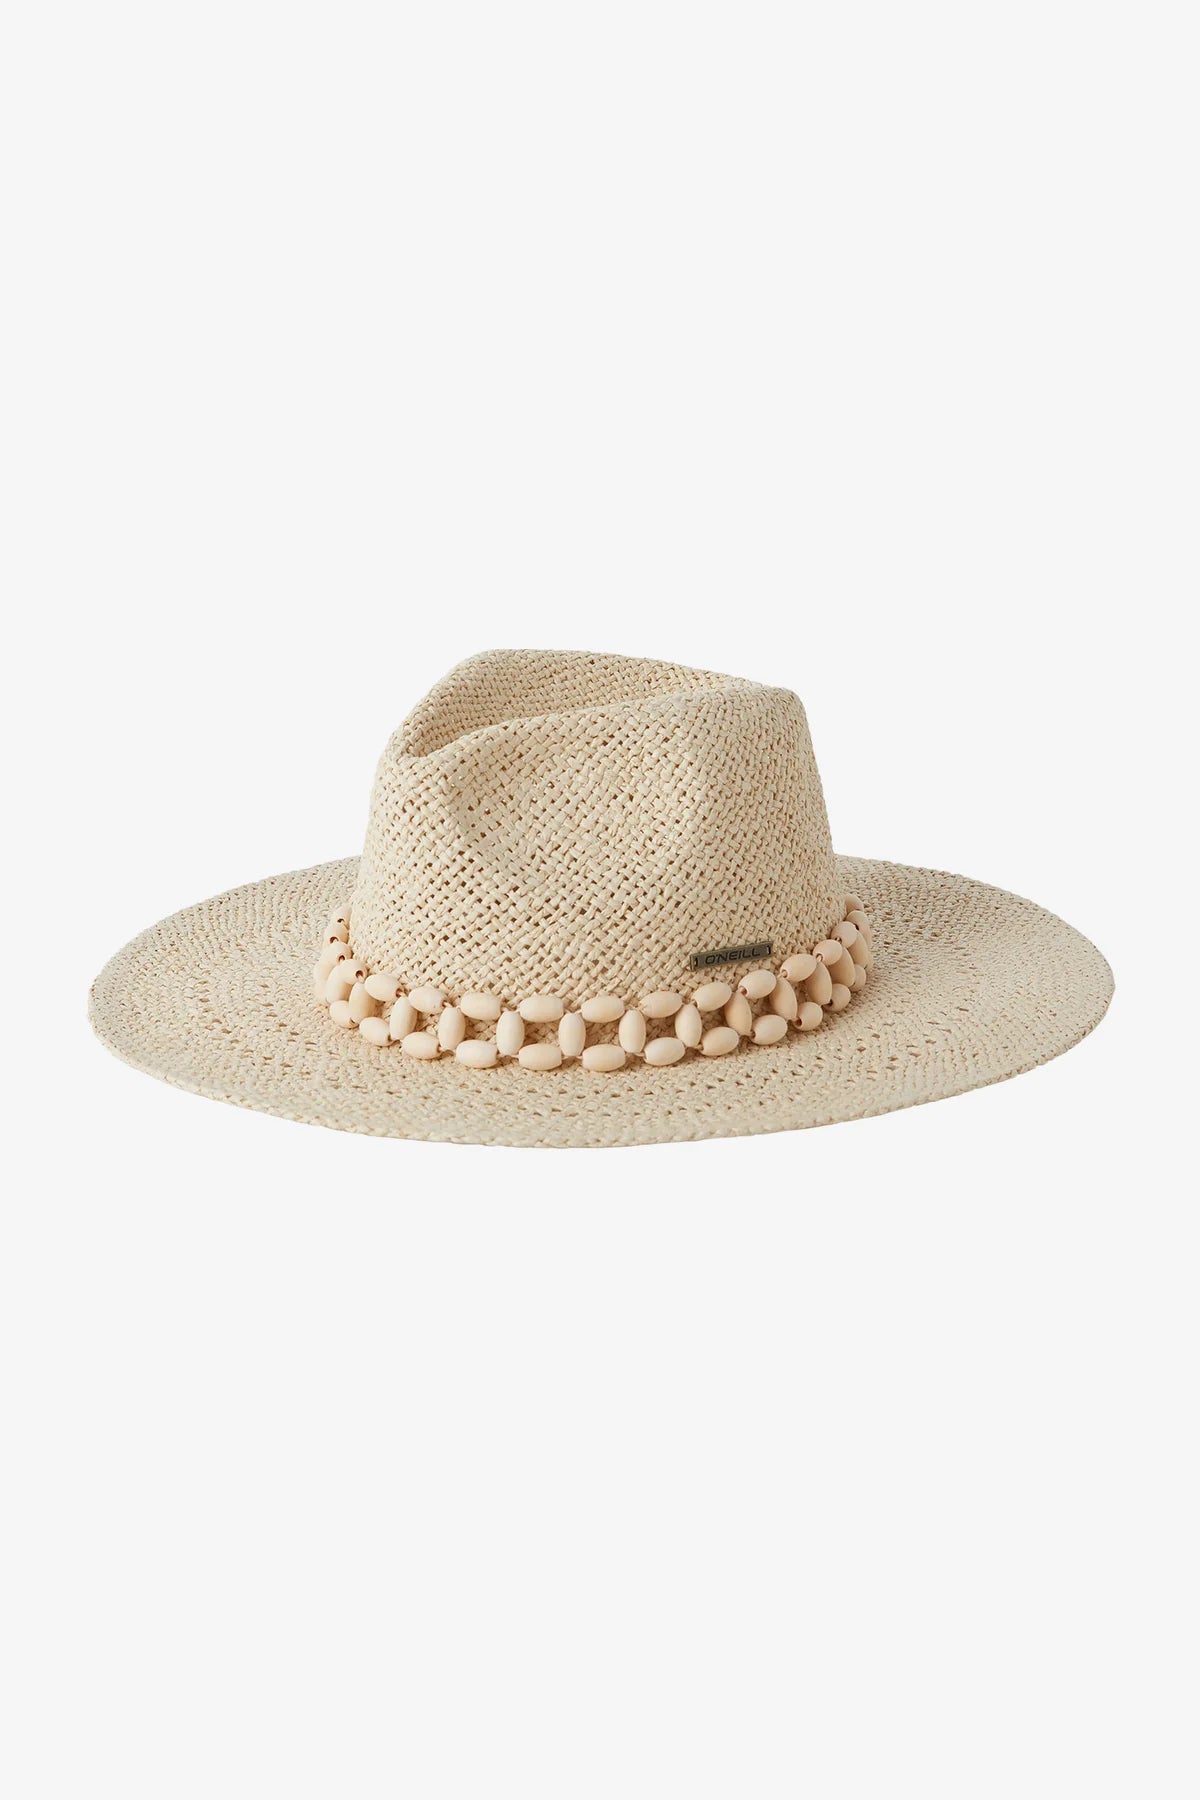 O'Neill Magic Bay Sun Hat